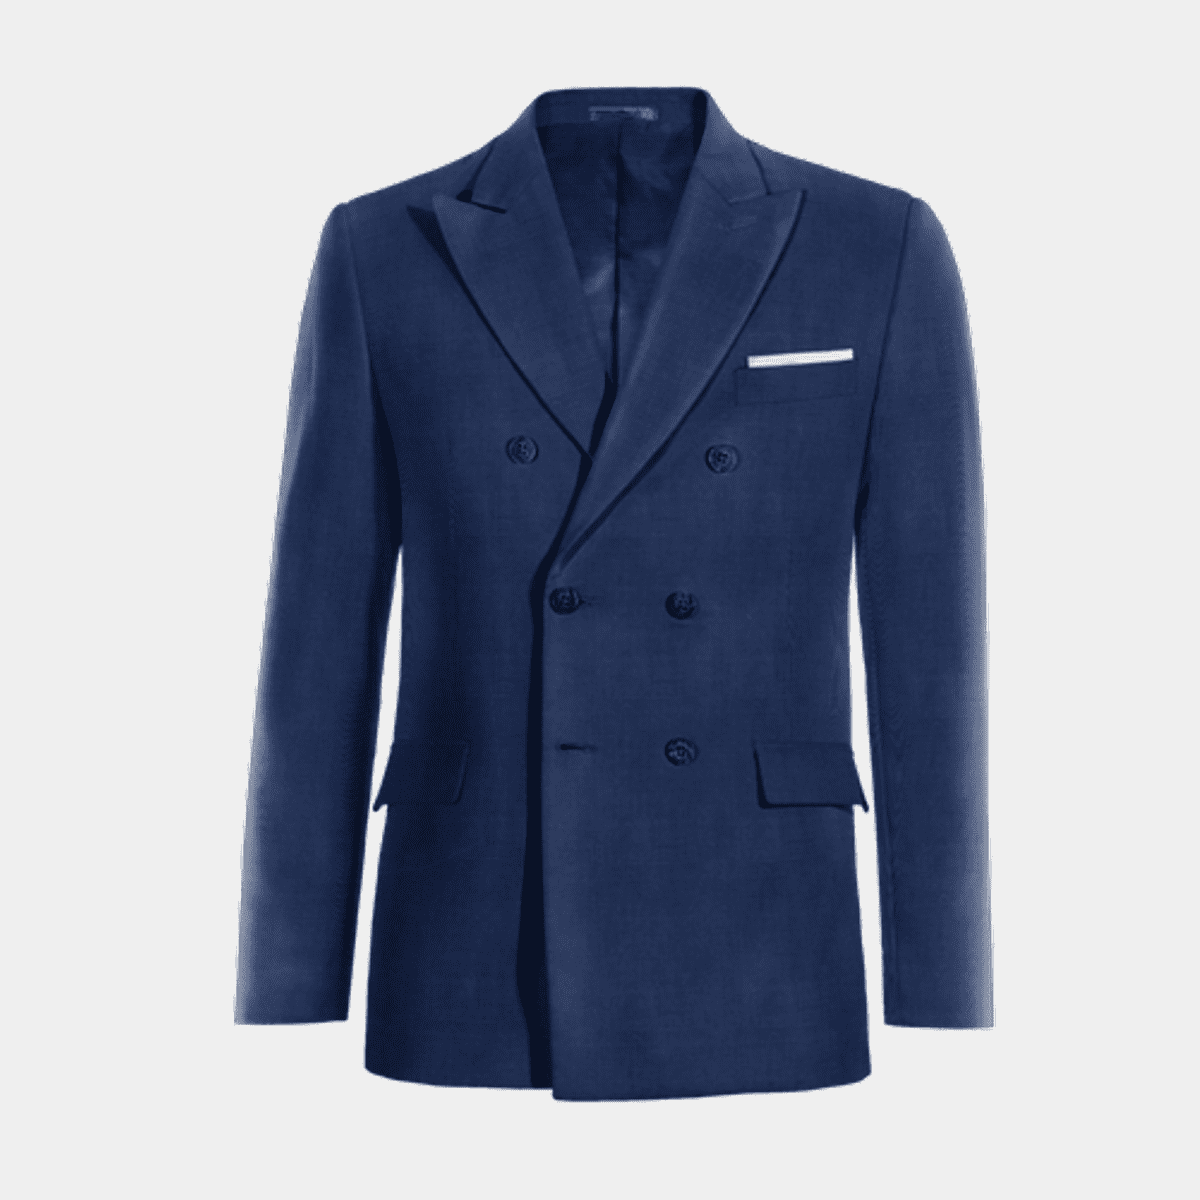 Blauer Damen Anzug aus Polyester-Rayon mit steigendem Revers